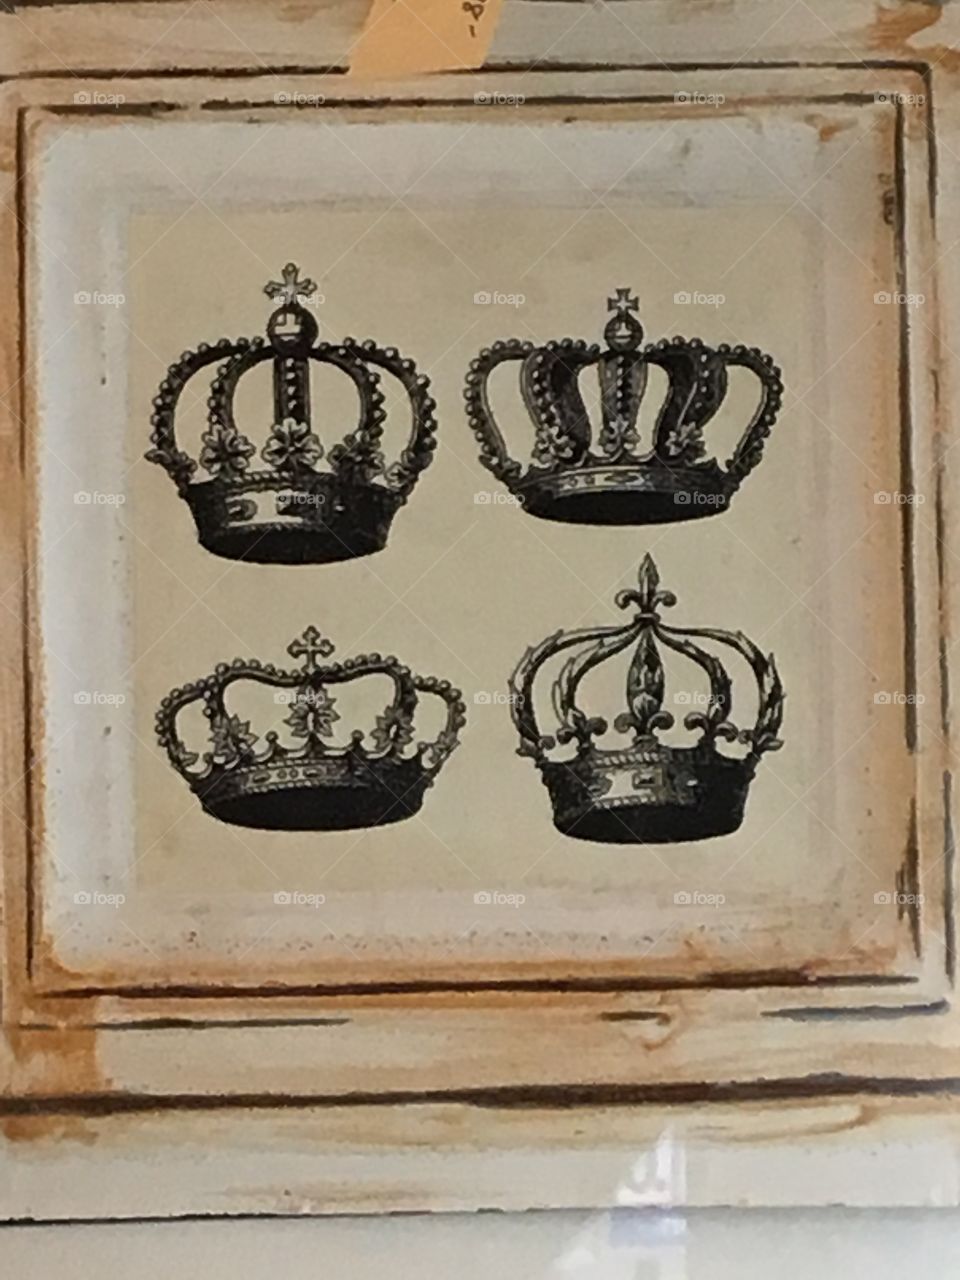 Royal Crowns